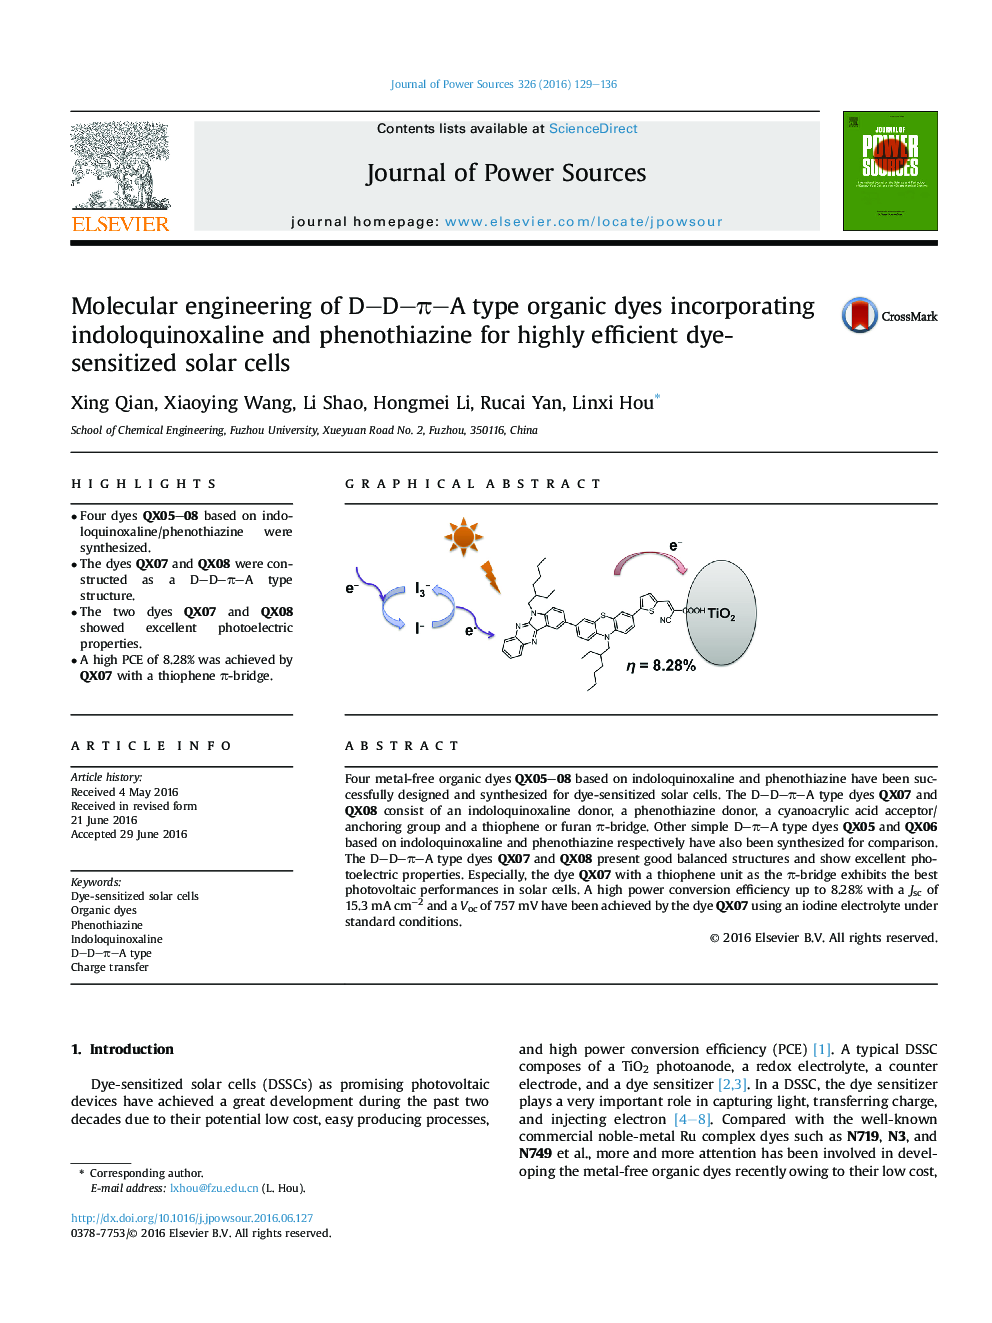 Molecular engineering of D-D-Ï-A type organic dyes incorporating indoloquinoxaline and phenothiazine for highly efficient dye-sensitized solar cells